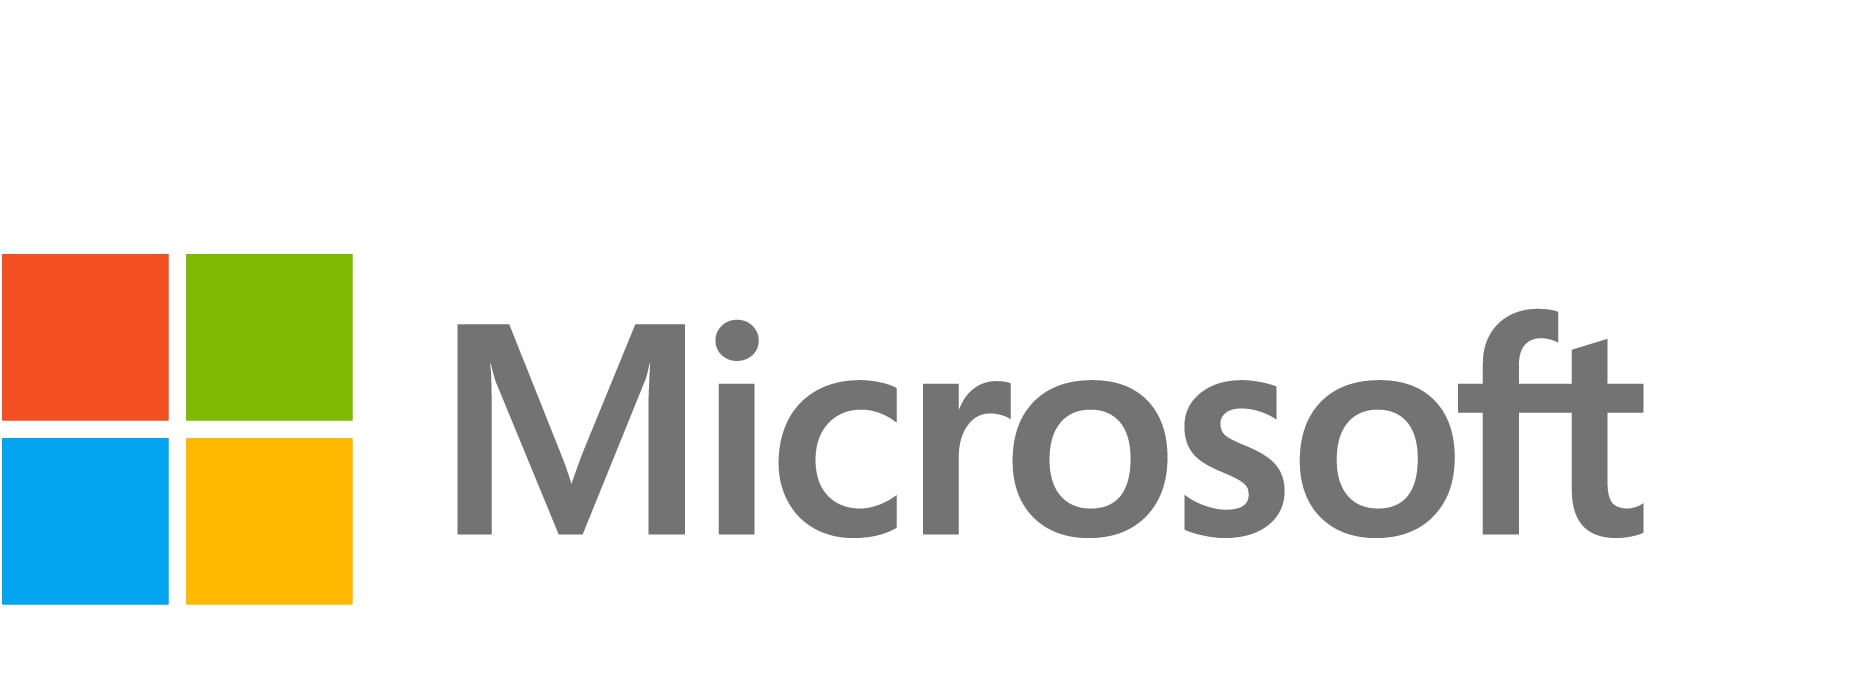 Microsoft Visual Studio Professional avec MSDN - licence et assurance pour logiciels